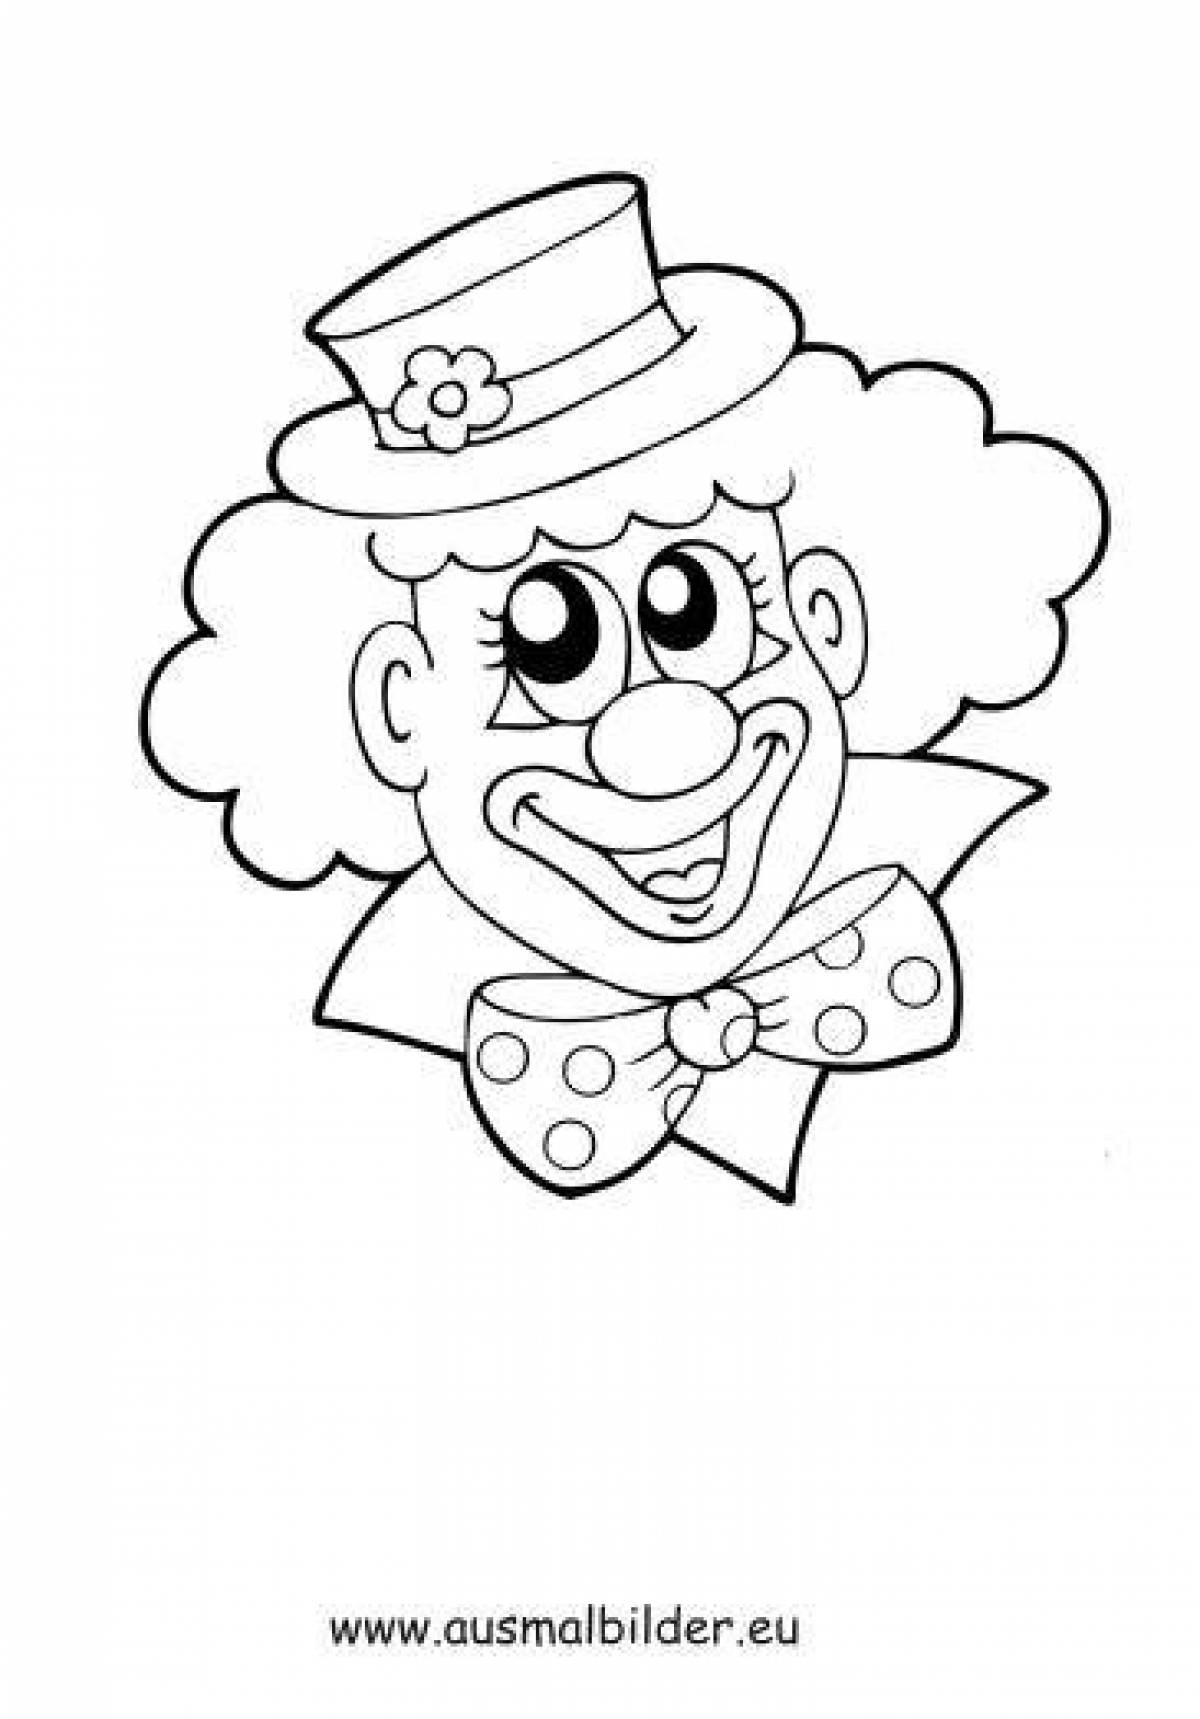 Лицо клоуна распечатать. Клоун раскраска. Клоун раскраска для детей. Веселый клоун раскраска. Раскраска весёлый клоун для детей.